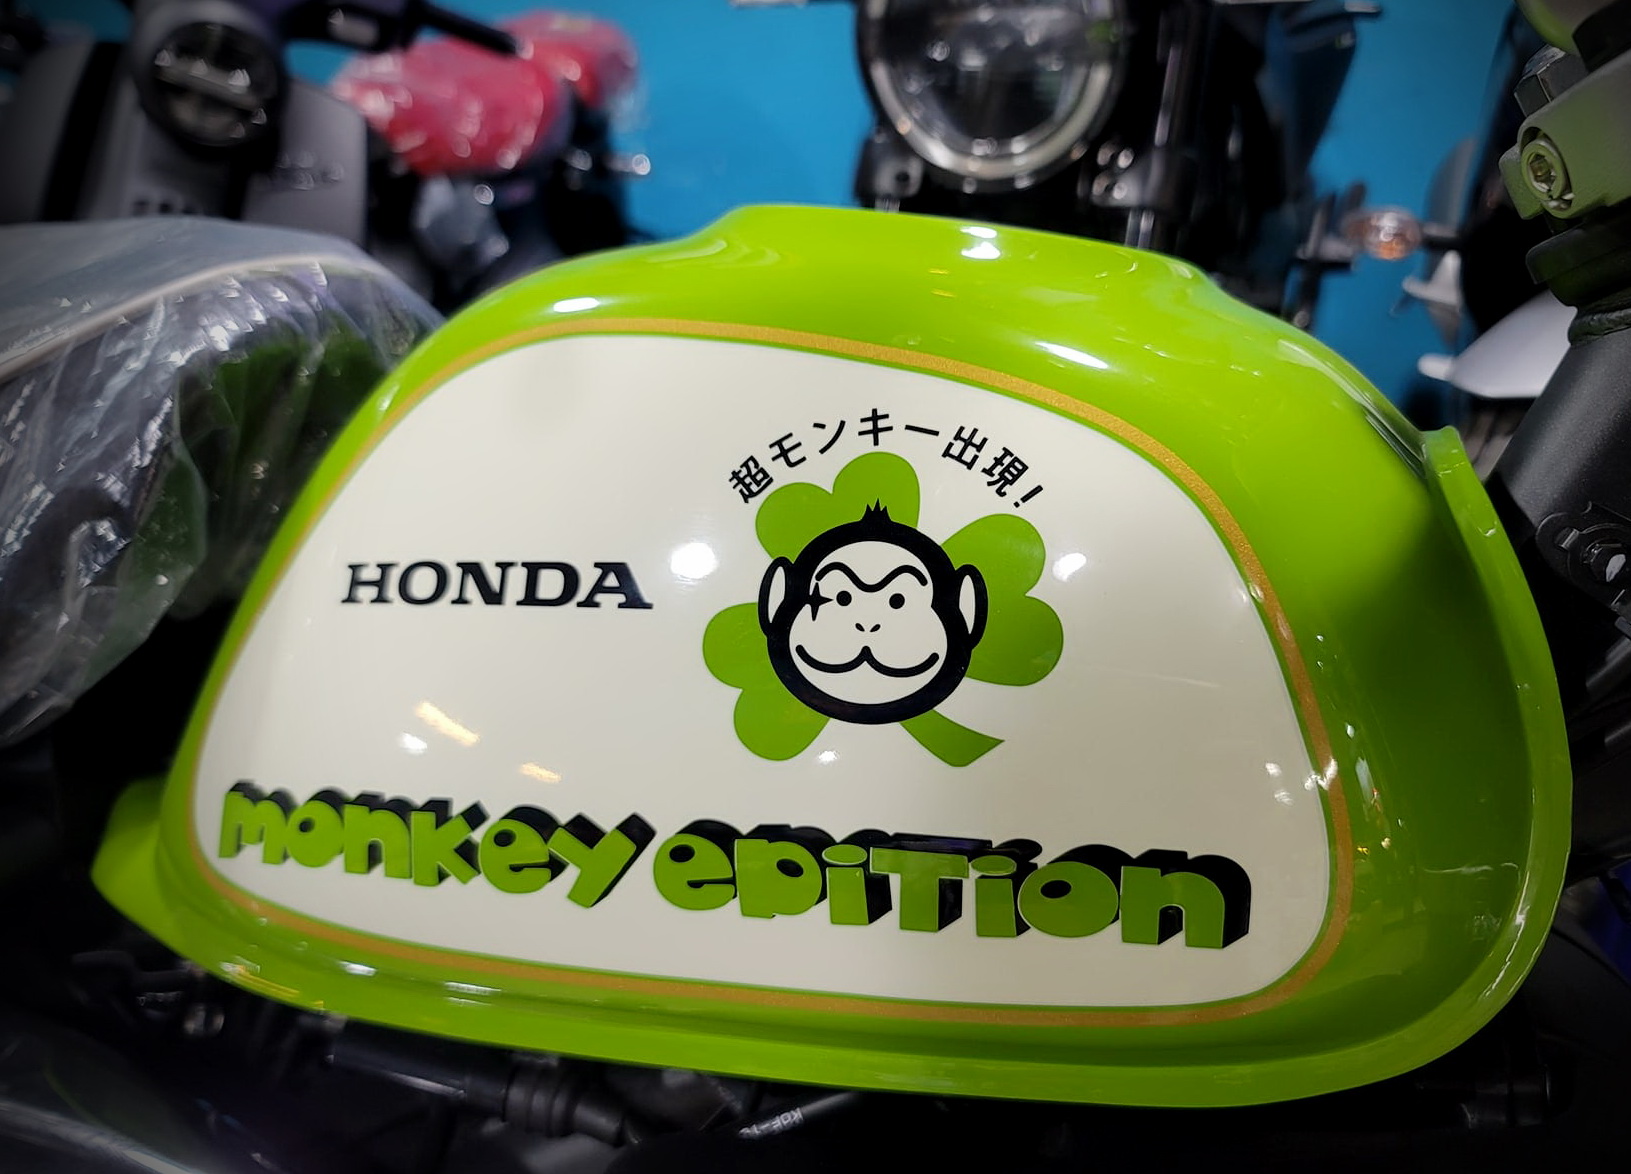 HONDA Monkey 125新車出售中  三葉草【勝大重機】全新車 五檔 HONDA MONKEY 125 三葉草 限量200台 售價$19.8萬 | 勝大重機